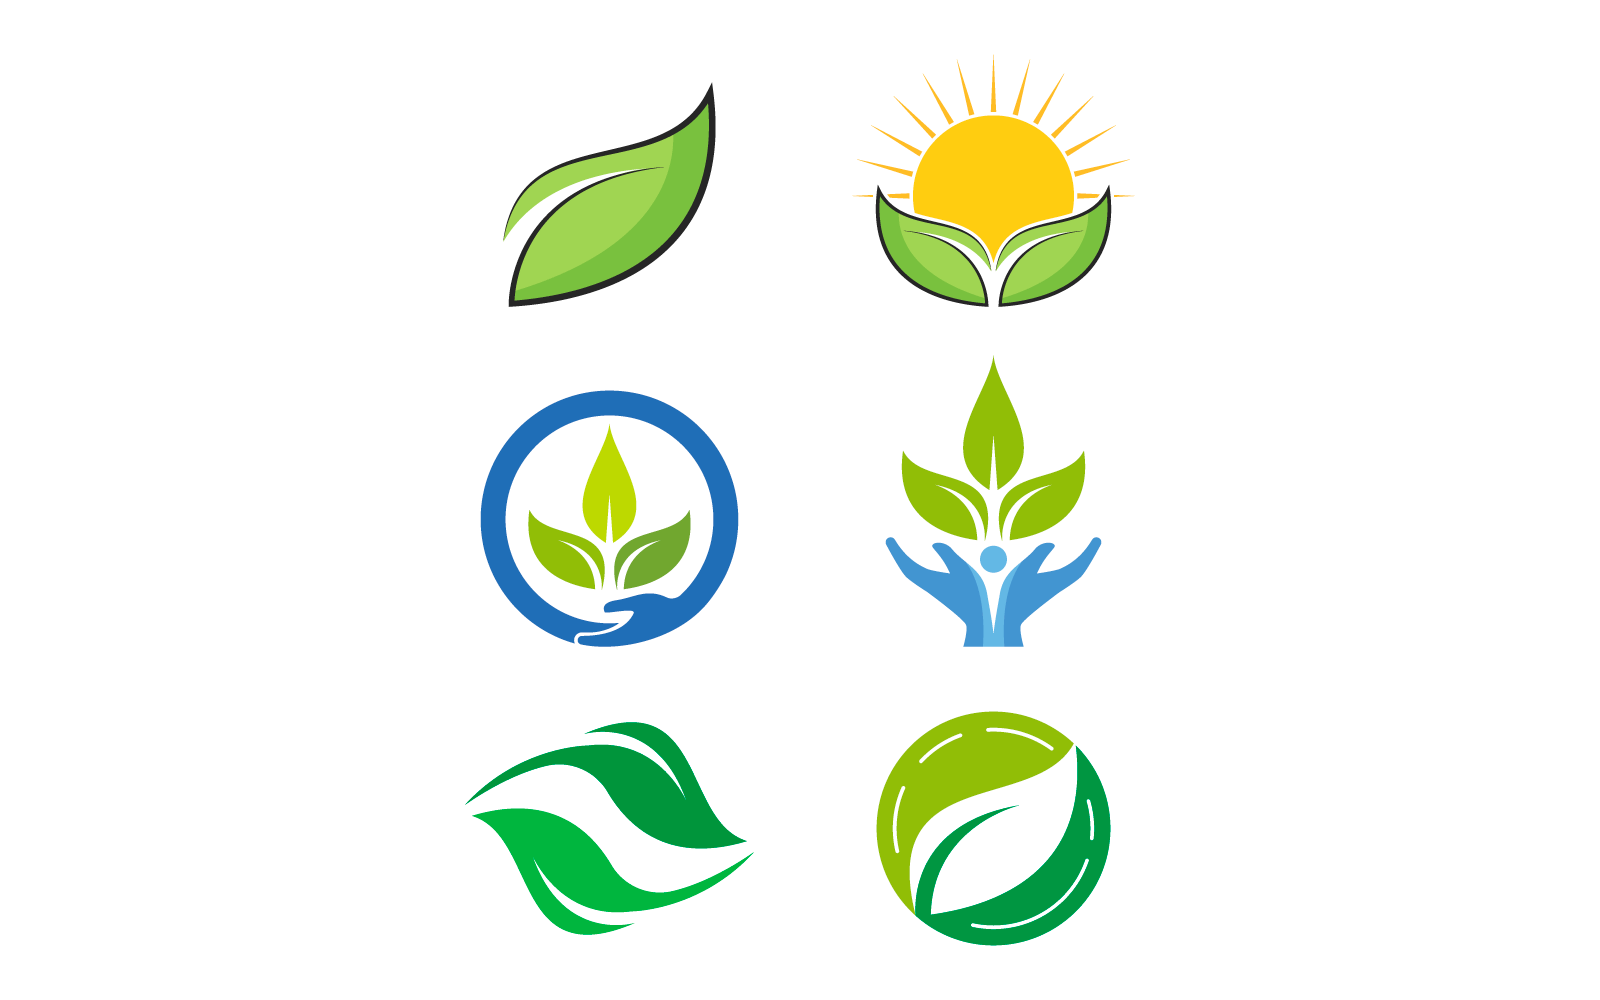 Eco care logo green leaf illustration